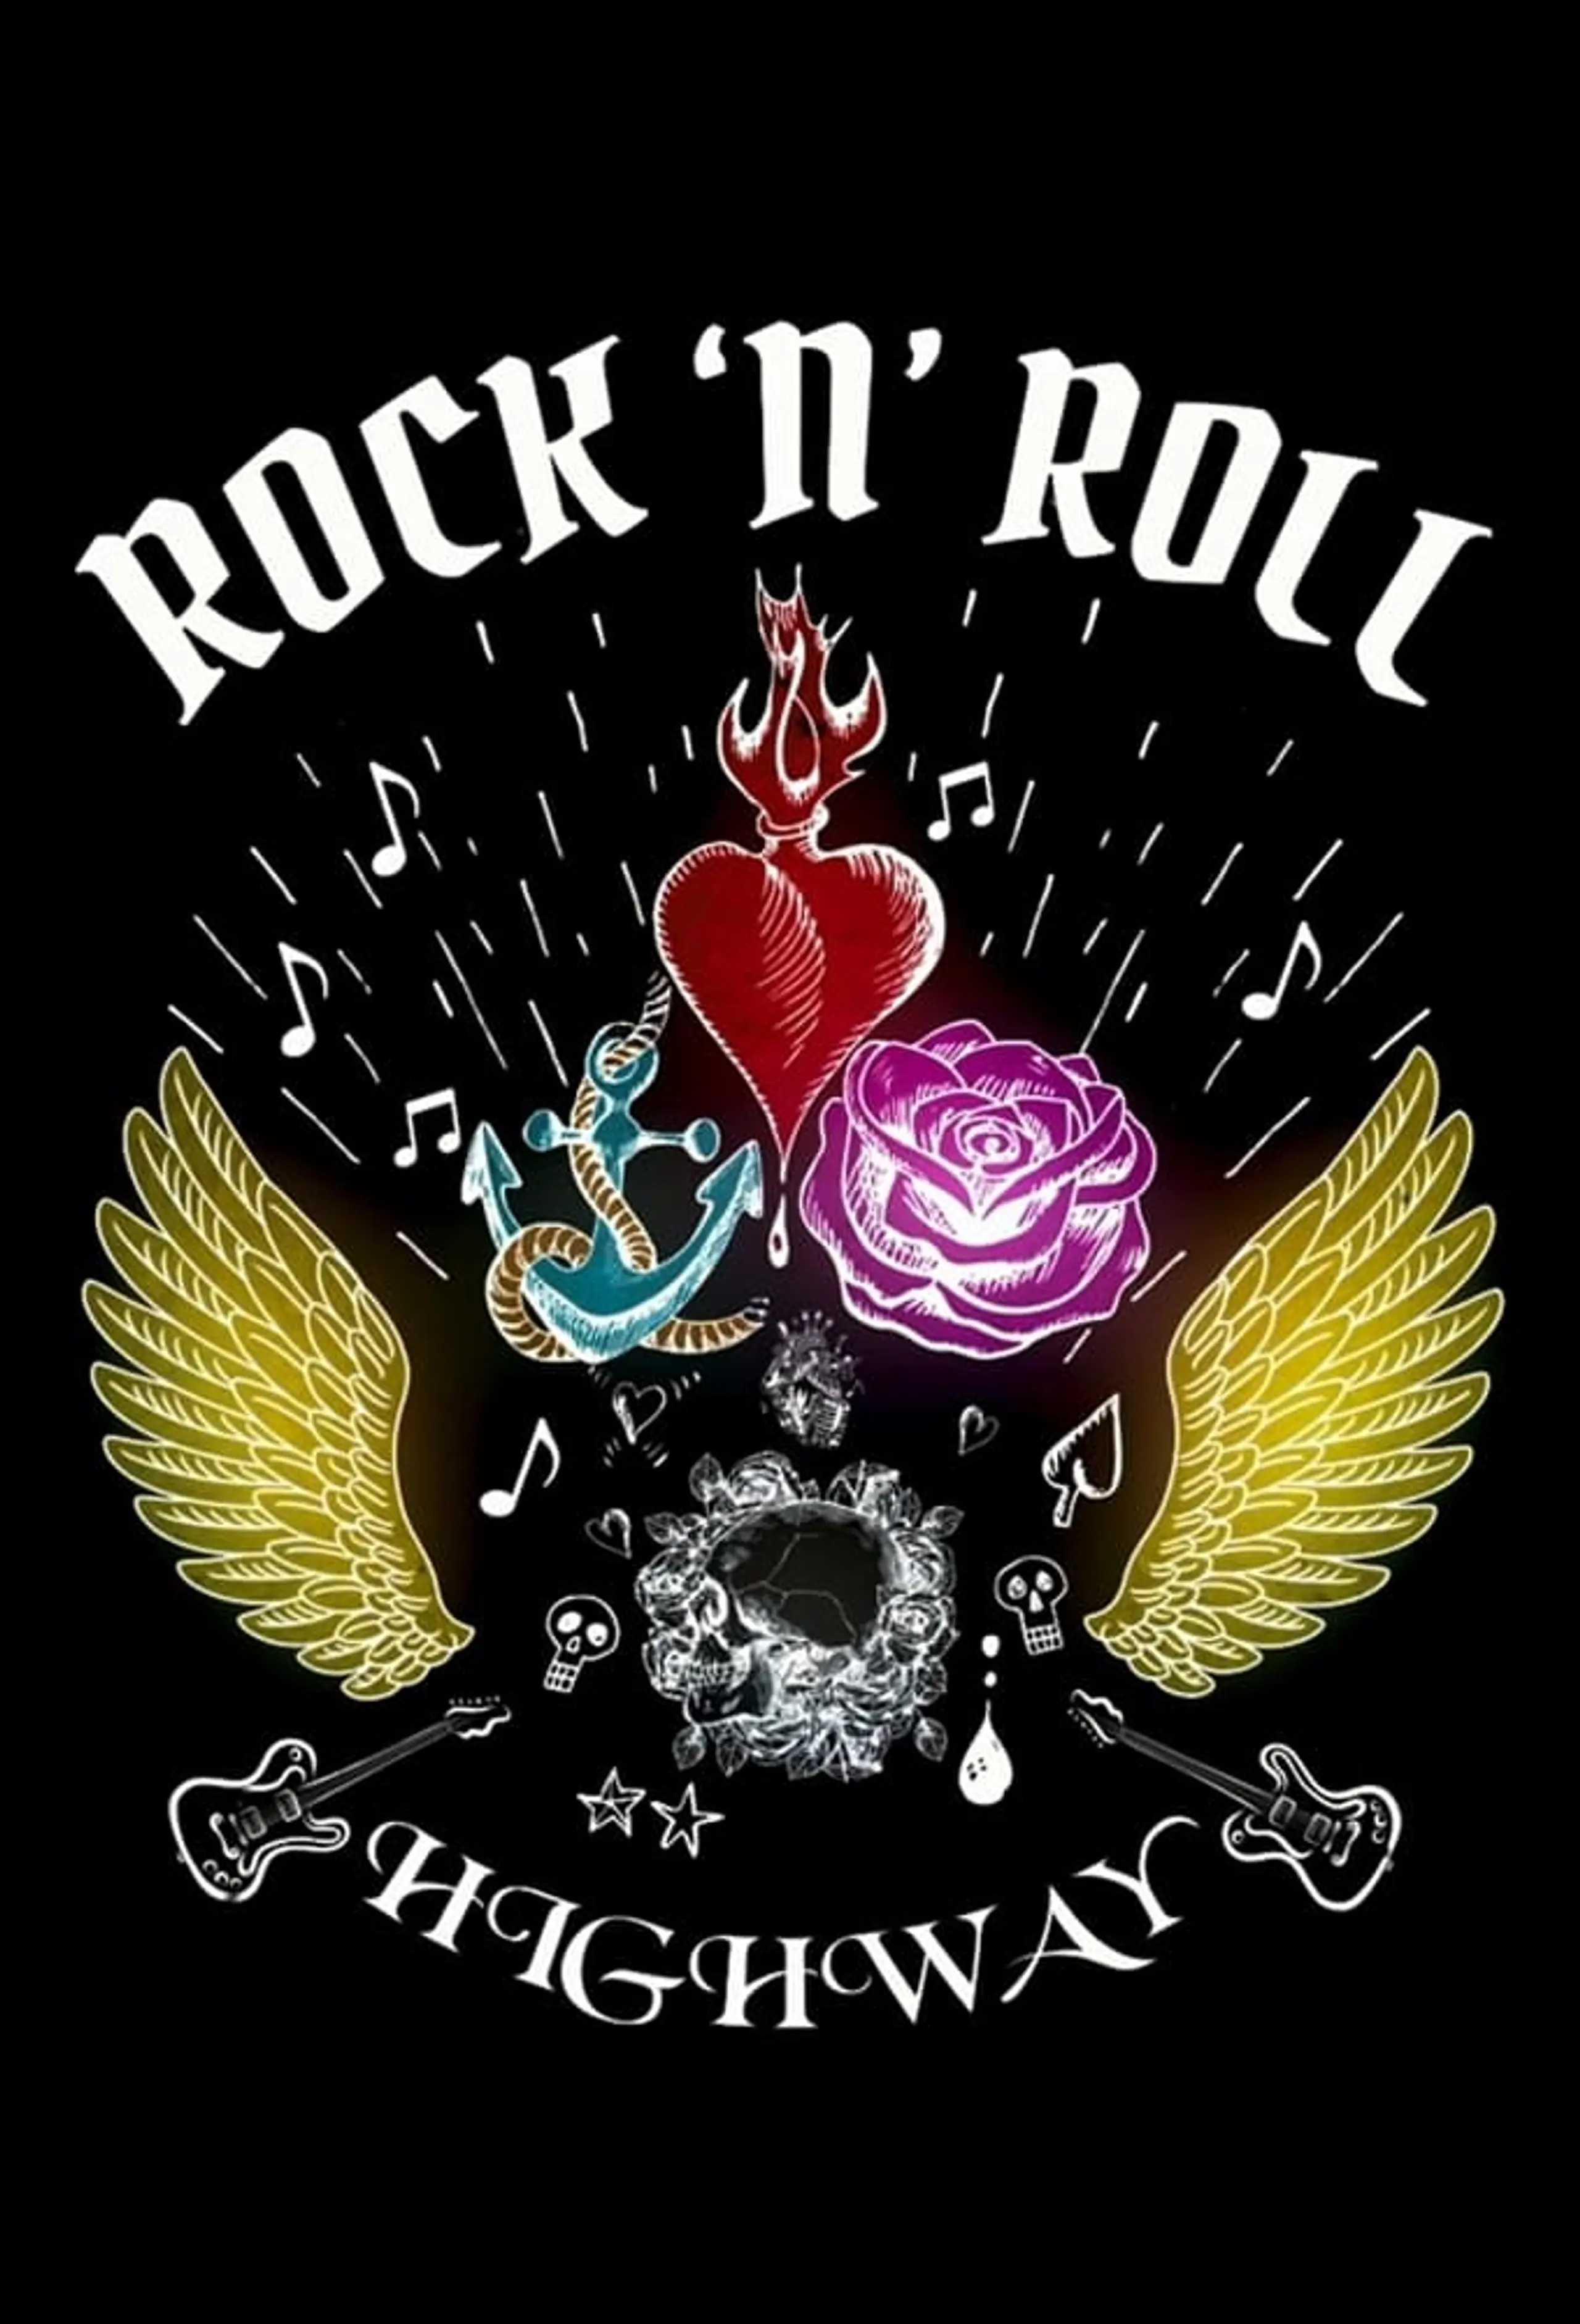 Rock ’n’ Roll Highway